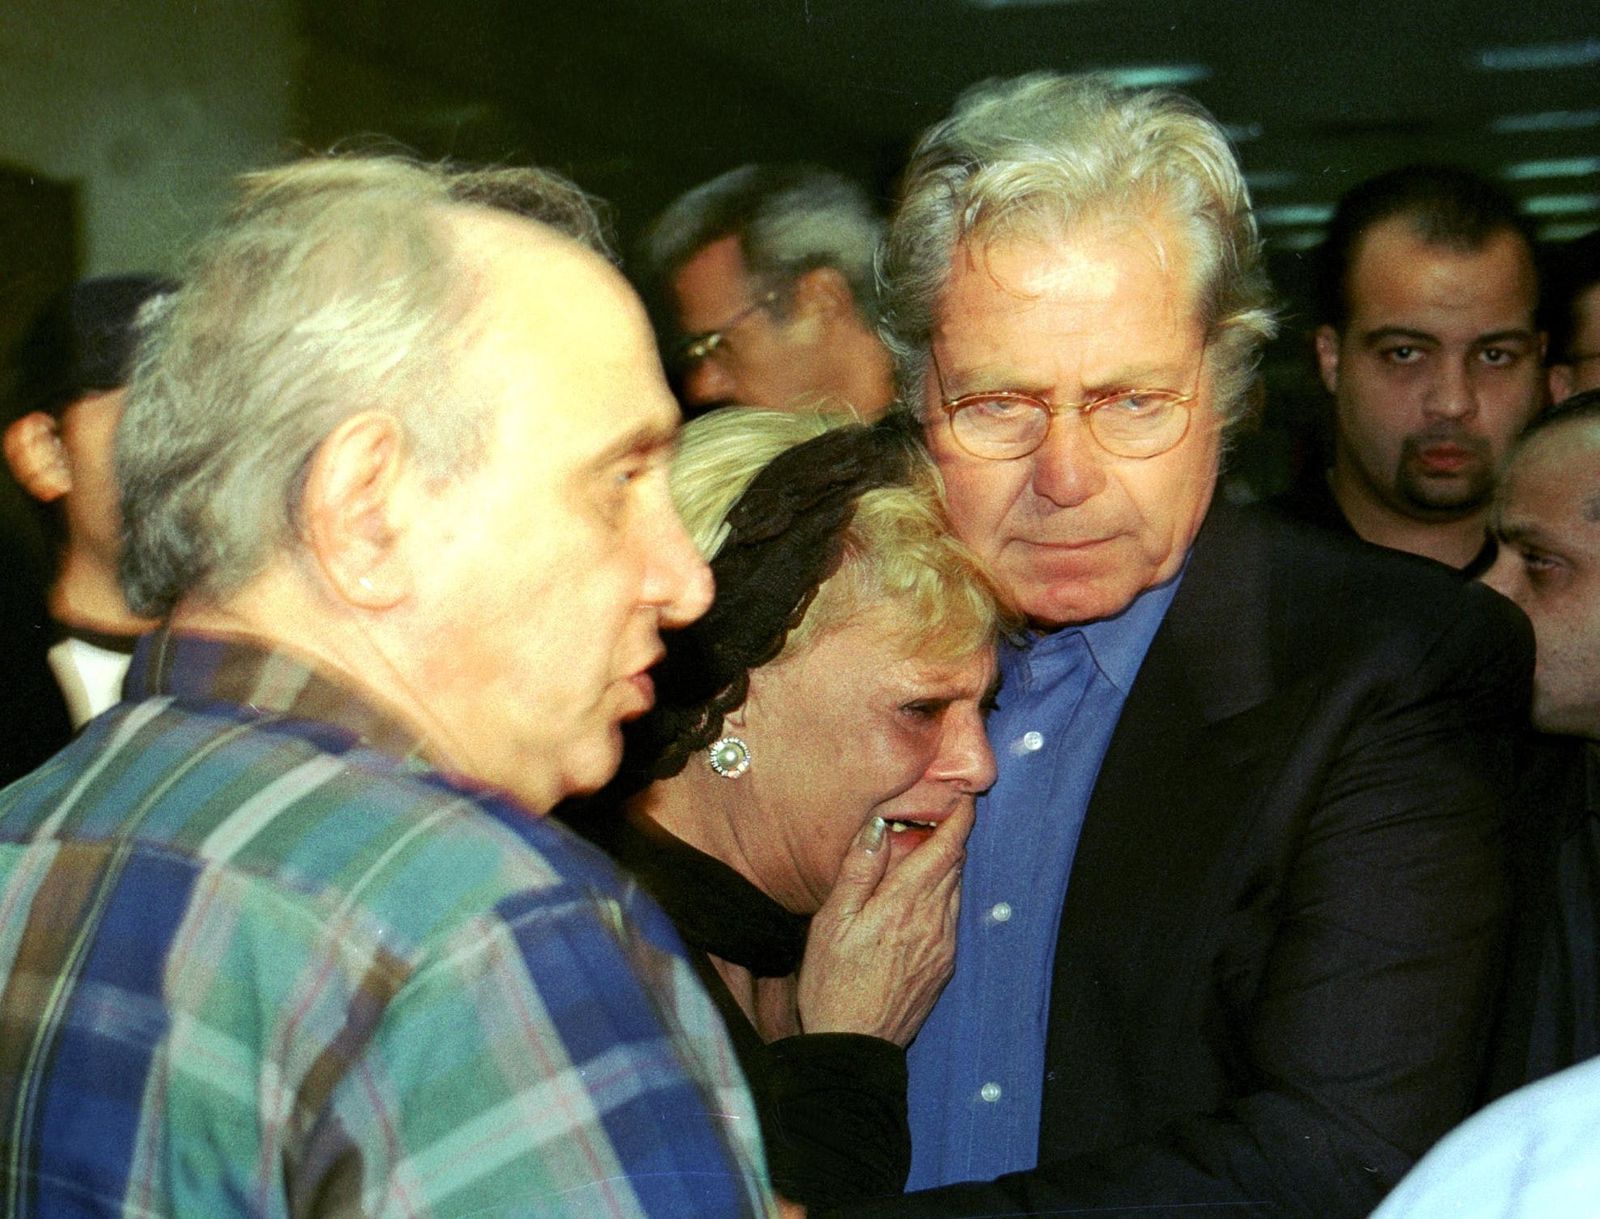 نادية لطفي تبكي في استقبال حثمان سعاد حسني في مطار القاهرة مع حسين فهمي والمخرج رأفت الميهي - AFP